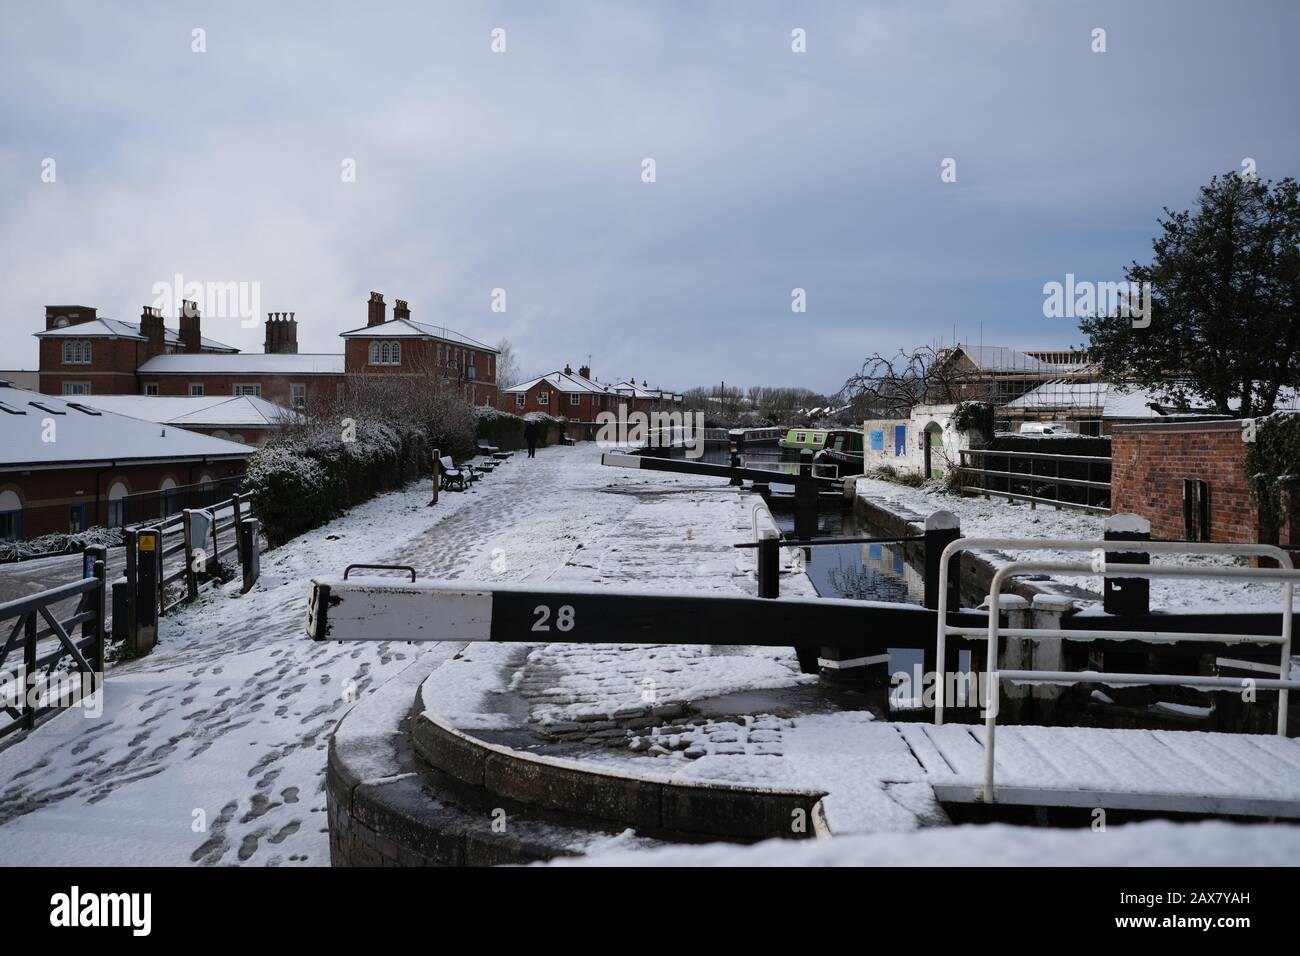 Erster Schnee im Vereinigten Königreich. Bild einer Schleuse am Kanal für schmale Boote. Stockfoto